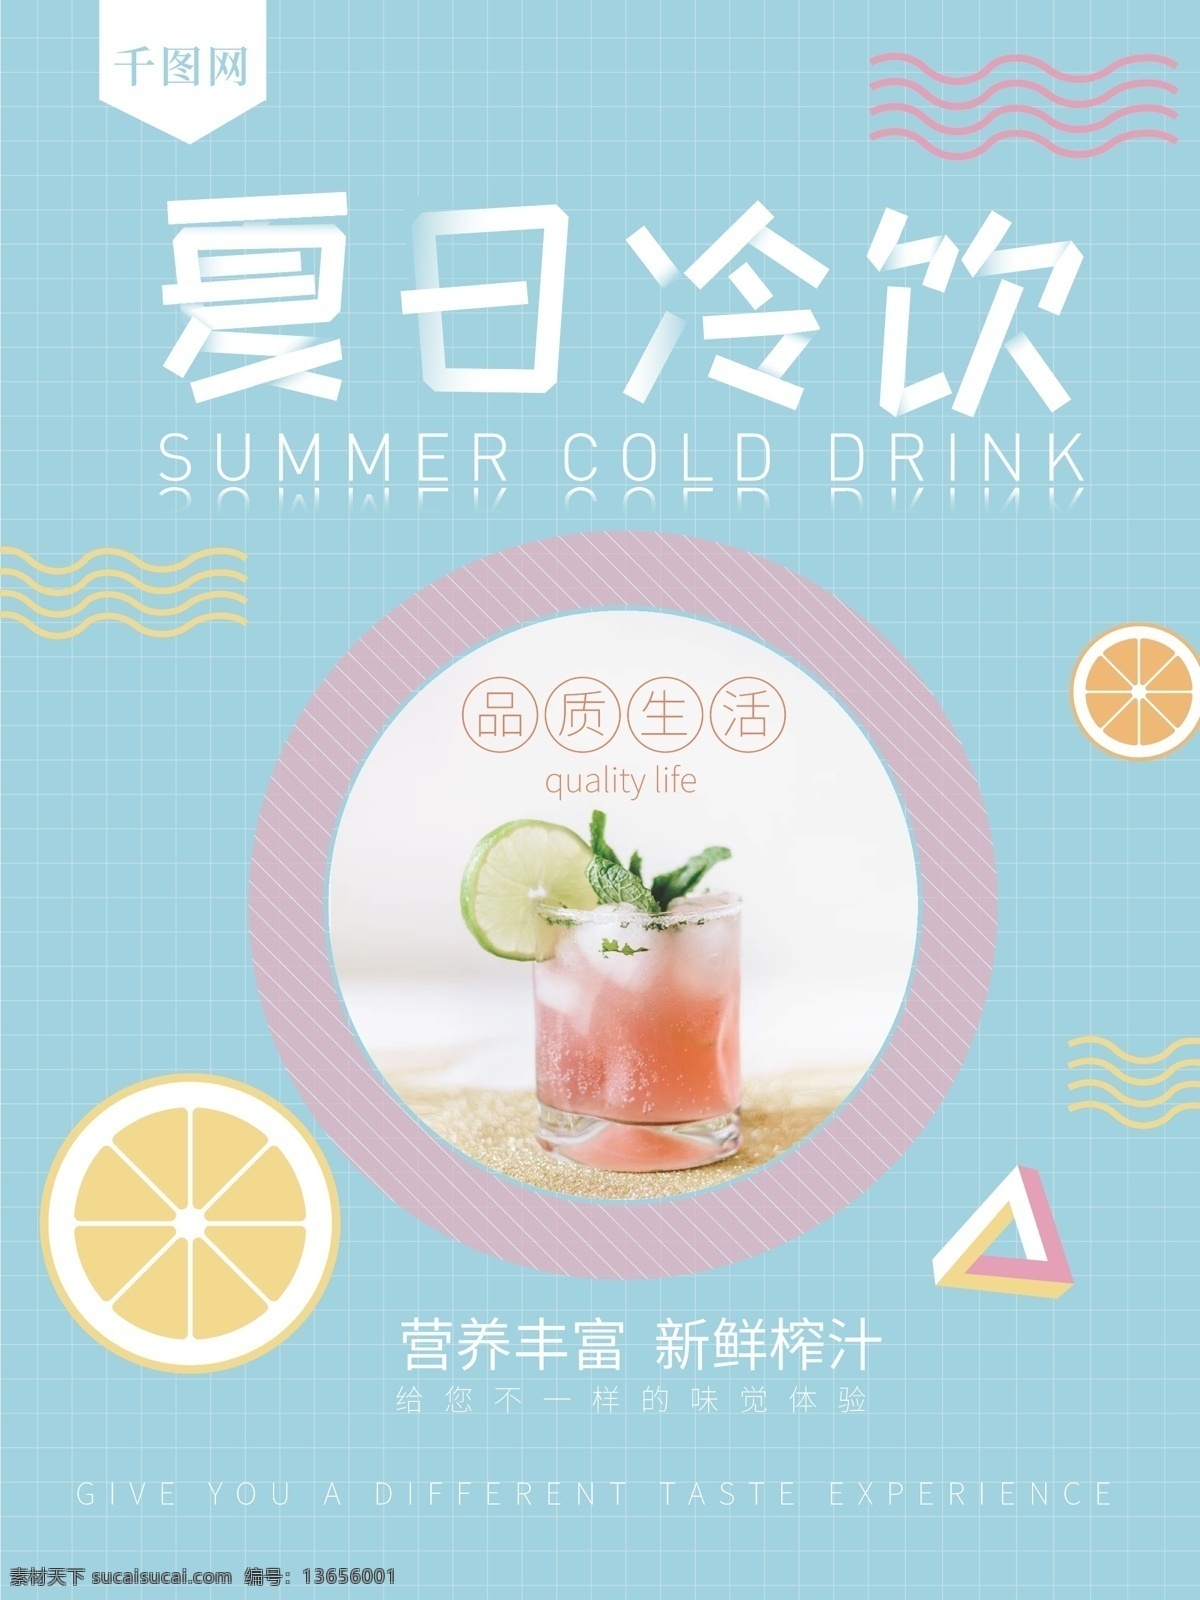 浅蓝色 夏日 冷饮 促销 海报 夏日冷饮 果汁 蓝色背景 品质生活